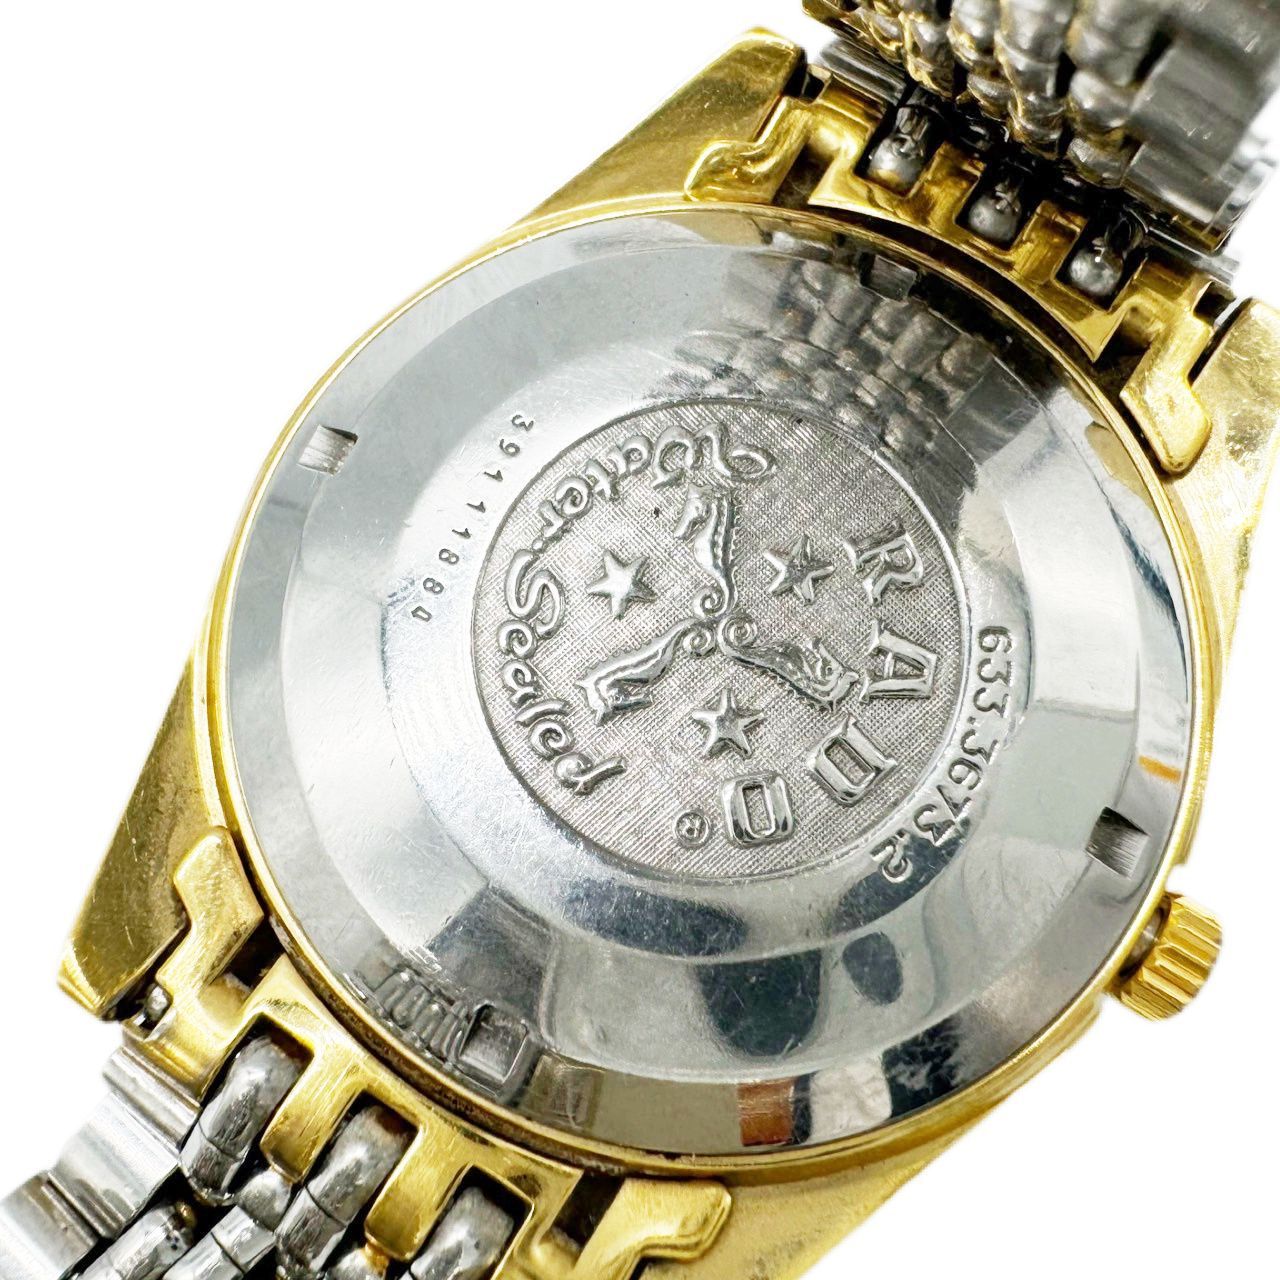 RADO ラドー ゴールデンホース デイト 自動巻き 腕時計 メンズ 純正SSコンビベルト 稼働品